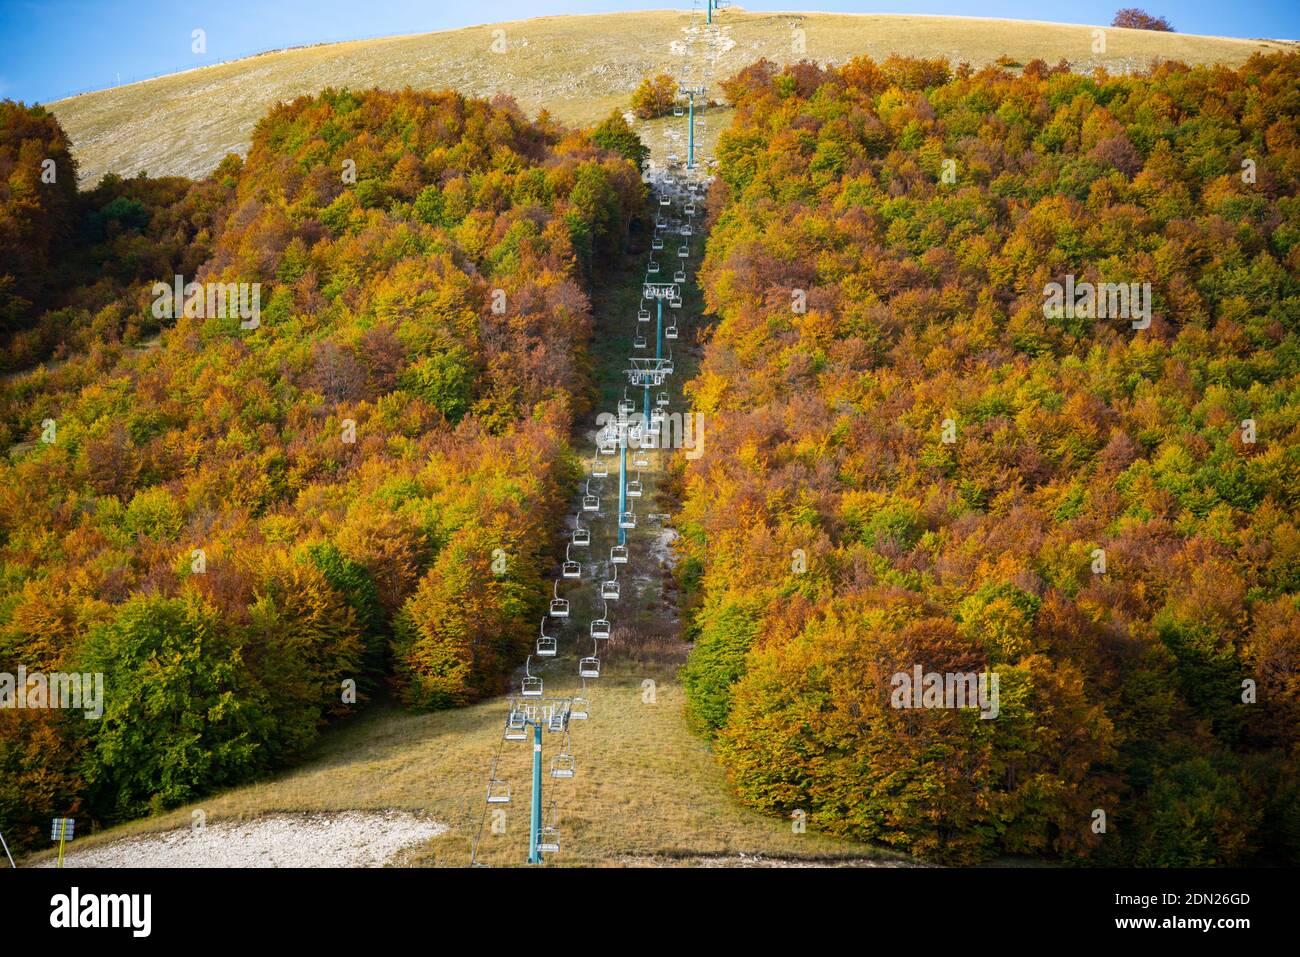 Aremogna Abruzzo mountain landscape in Italy Stock Photo